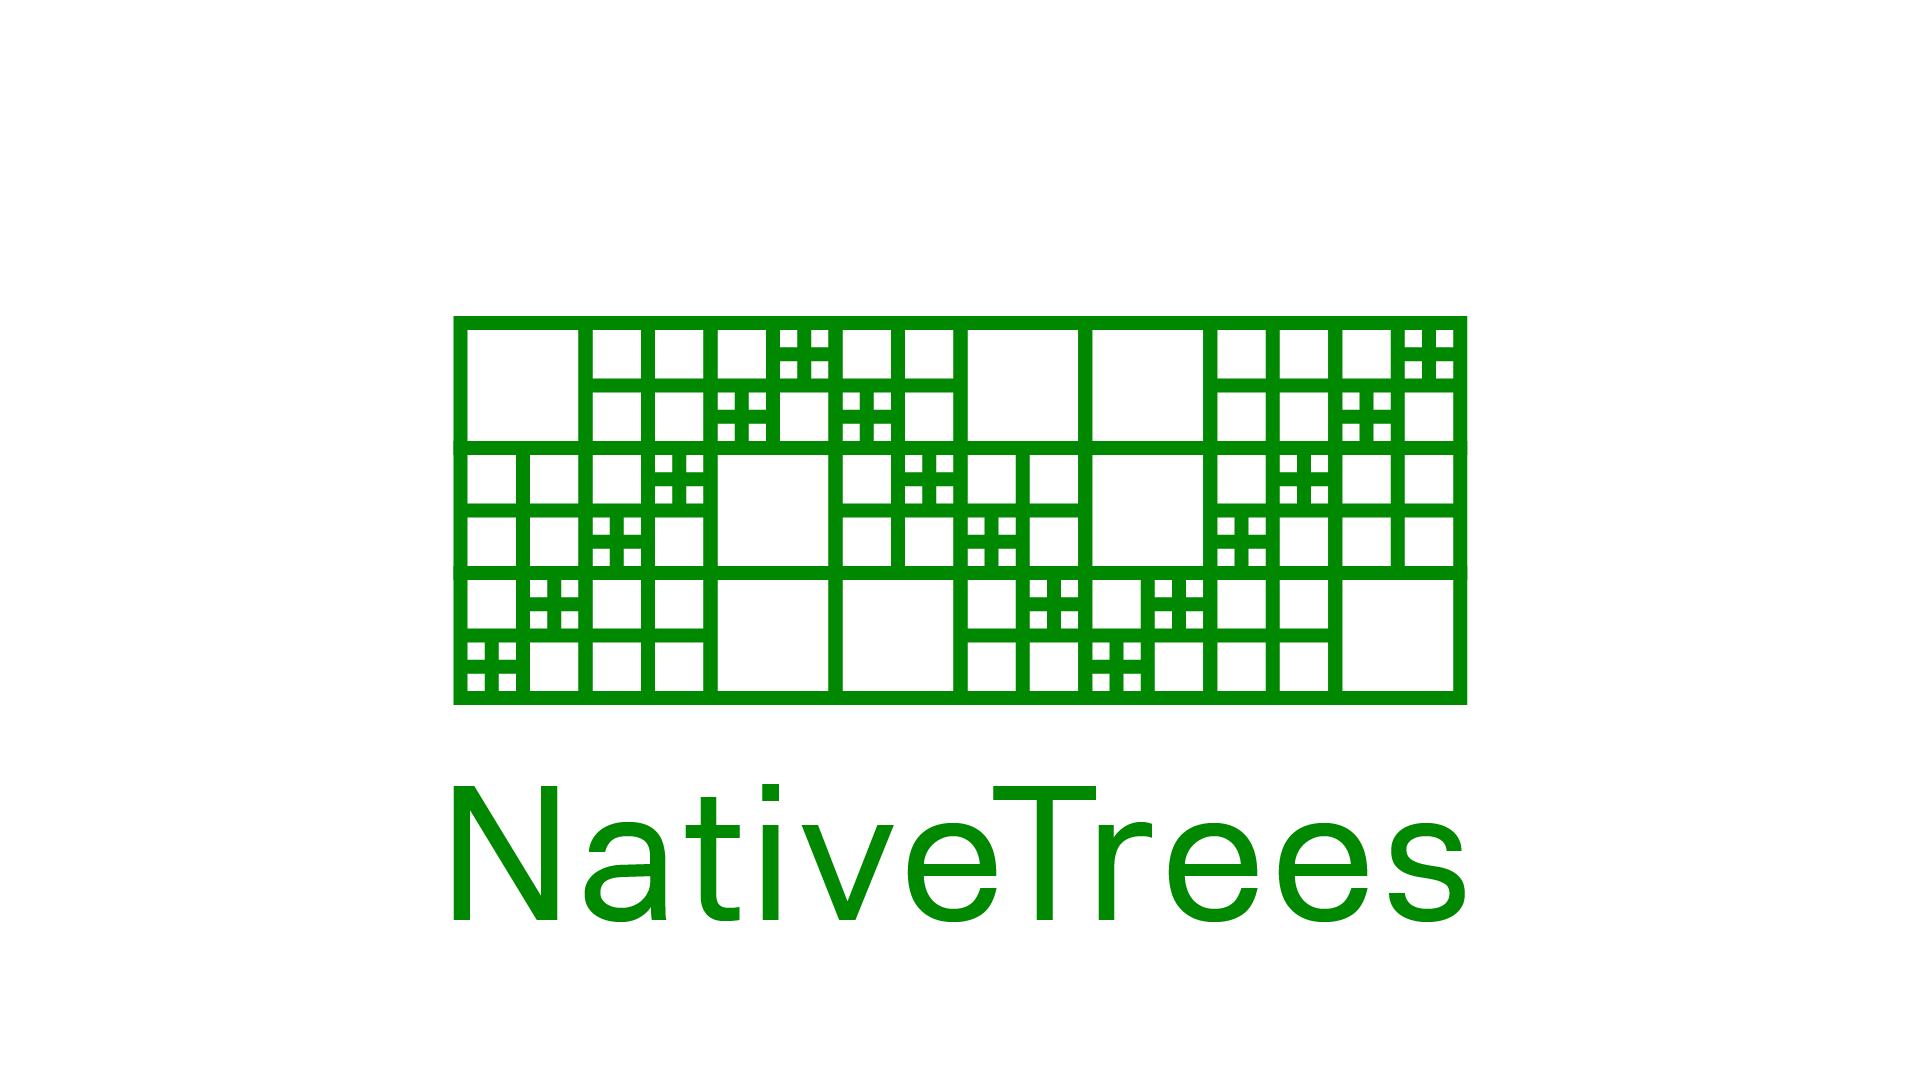 NativeTrees